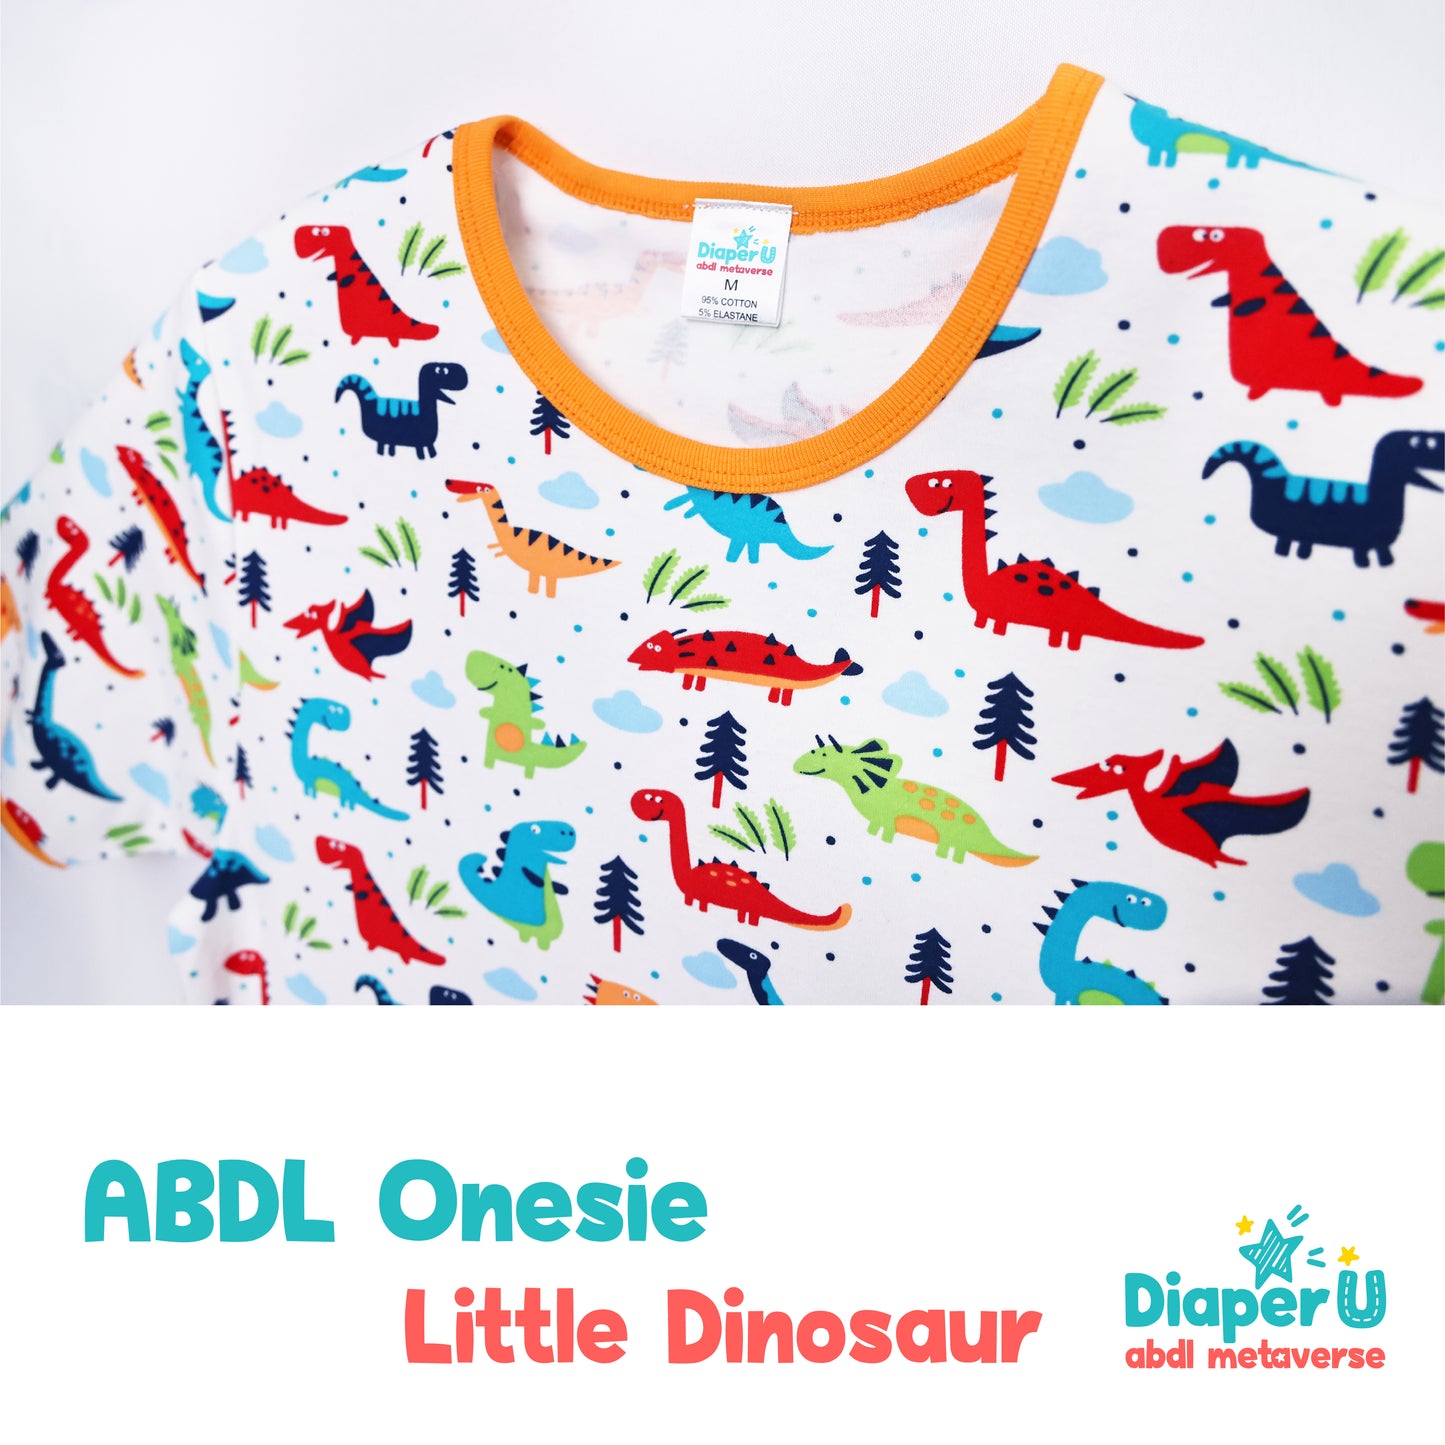 ABDL Onesie - Little Dinosaur